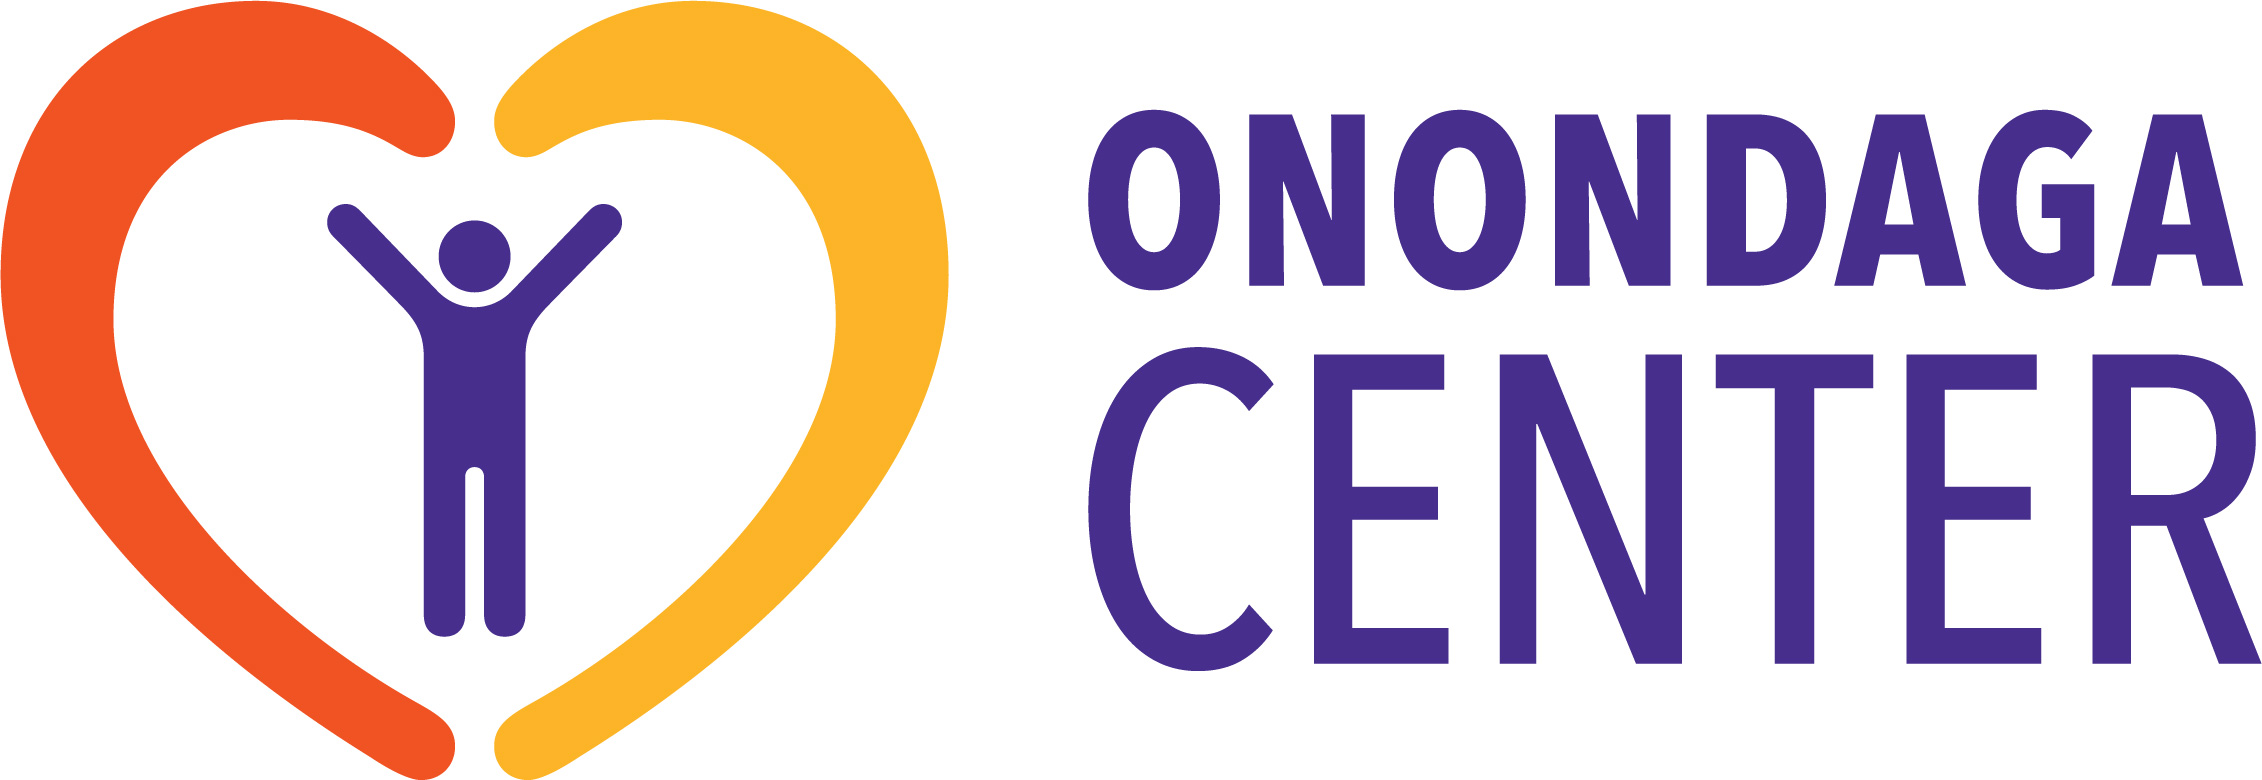 Onondaga Center logo